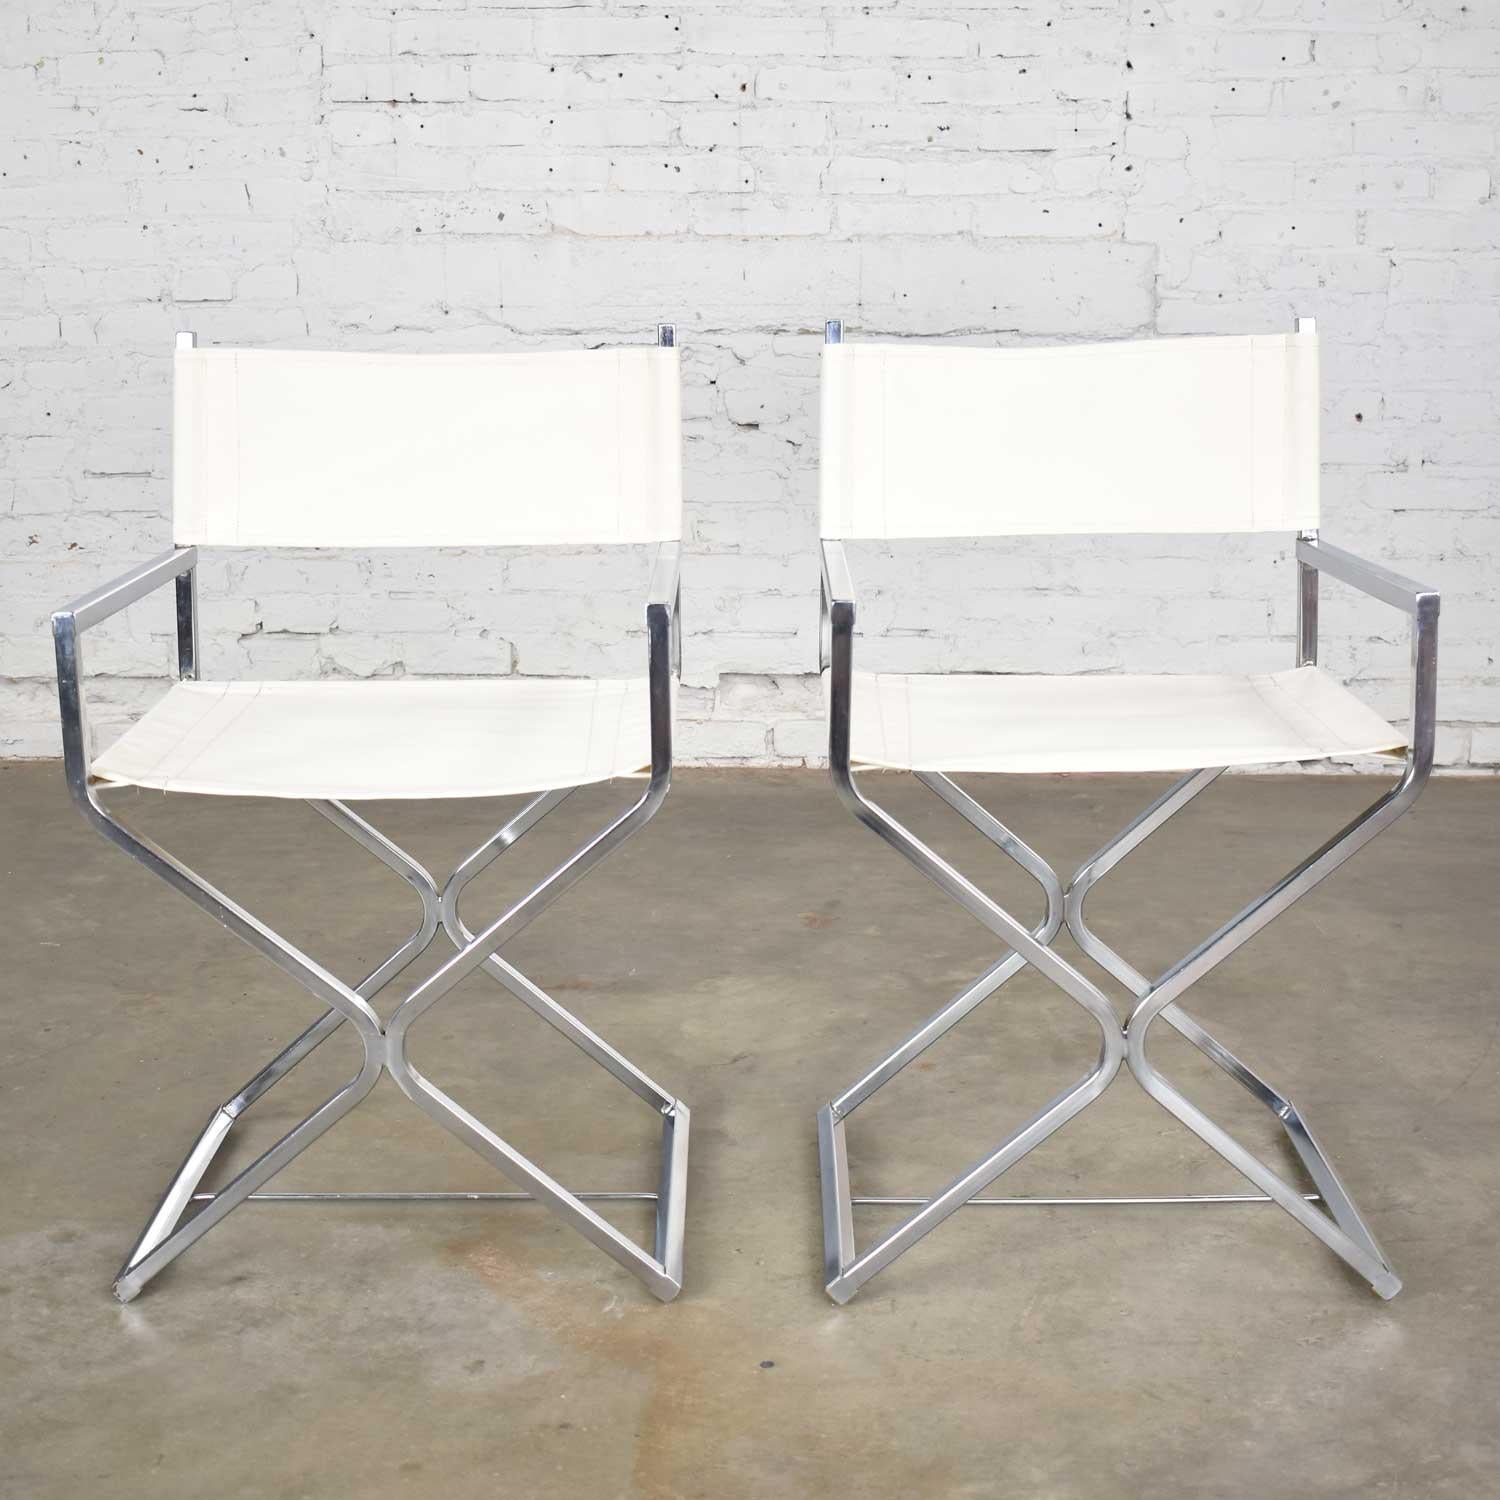 Wunderschönes Paar MCM a.k.a. Mid-Century Modern Campaigner Style Sling Director's Chairs, die Robert Kjer Jakobsen für Virtue Brothers zugeschrieben werden. Sie sind in einem wunderbaren Vintage-Zustand. Die Sling's sind neu mit weißem Segeltuch